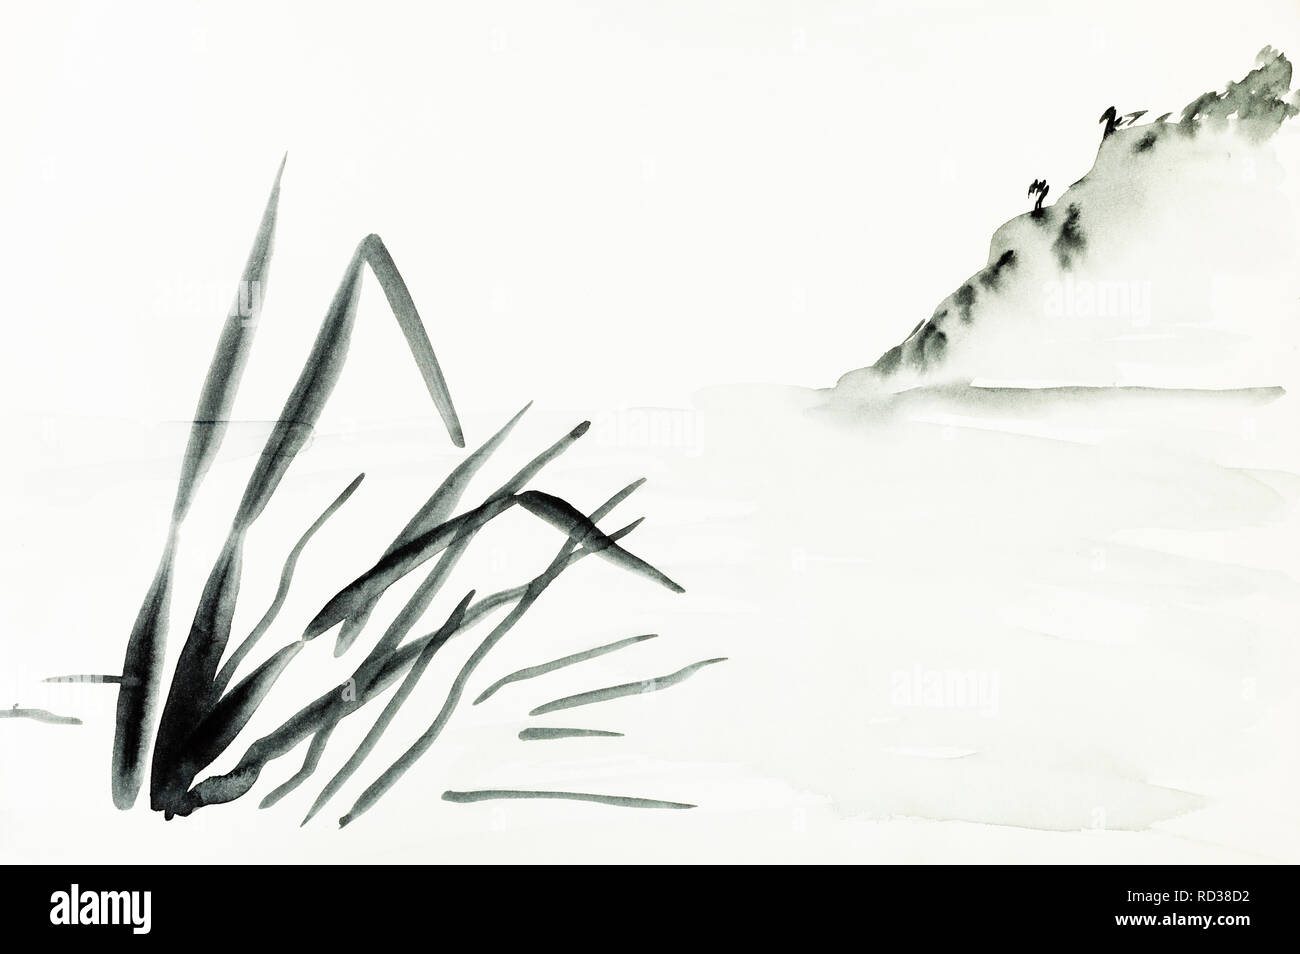 La formation en dessin sumi-e (suibokuga) with style - vue du rivage avec pente de montagne est dessiné à la main sur papier crème Banque D'Images